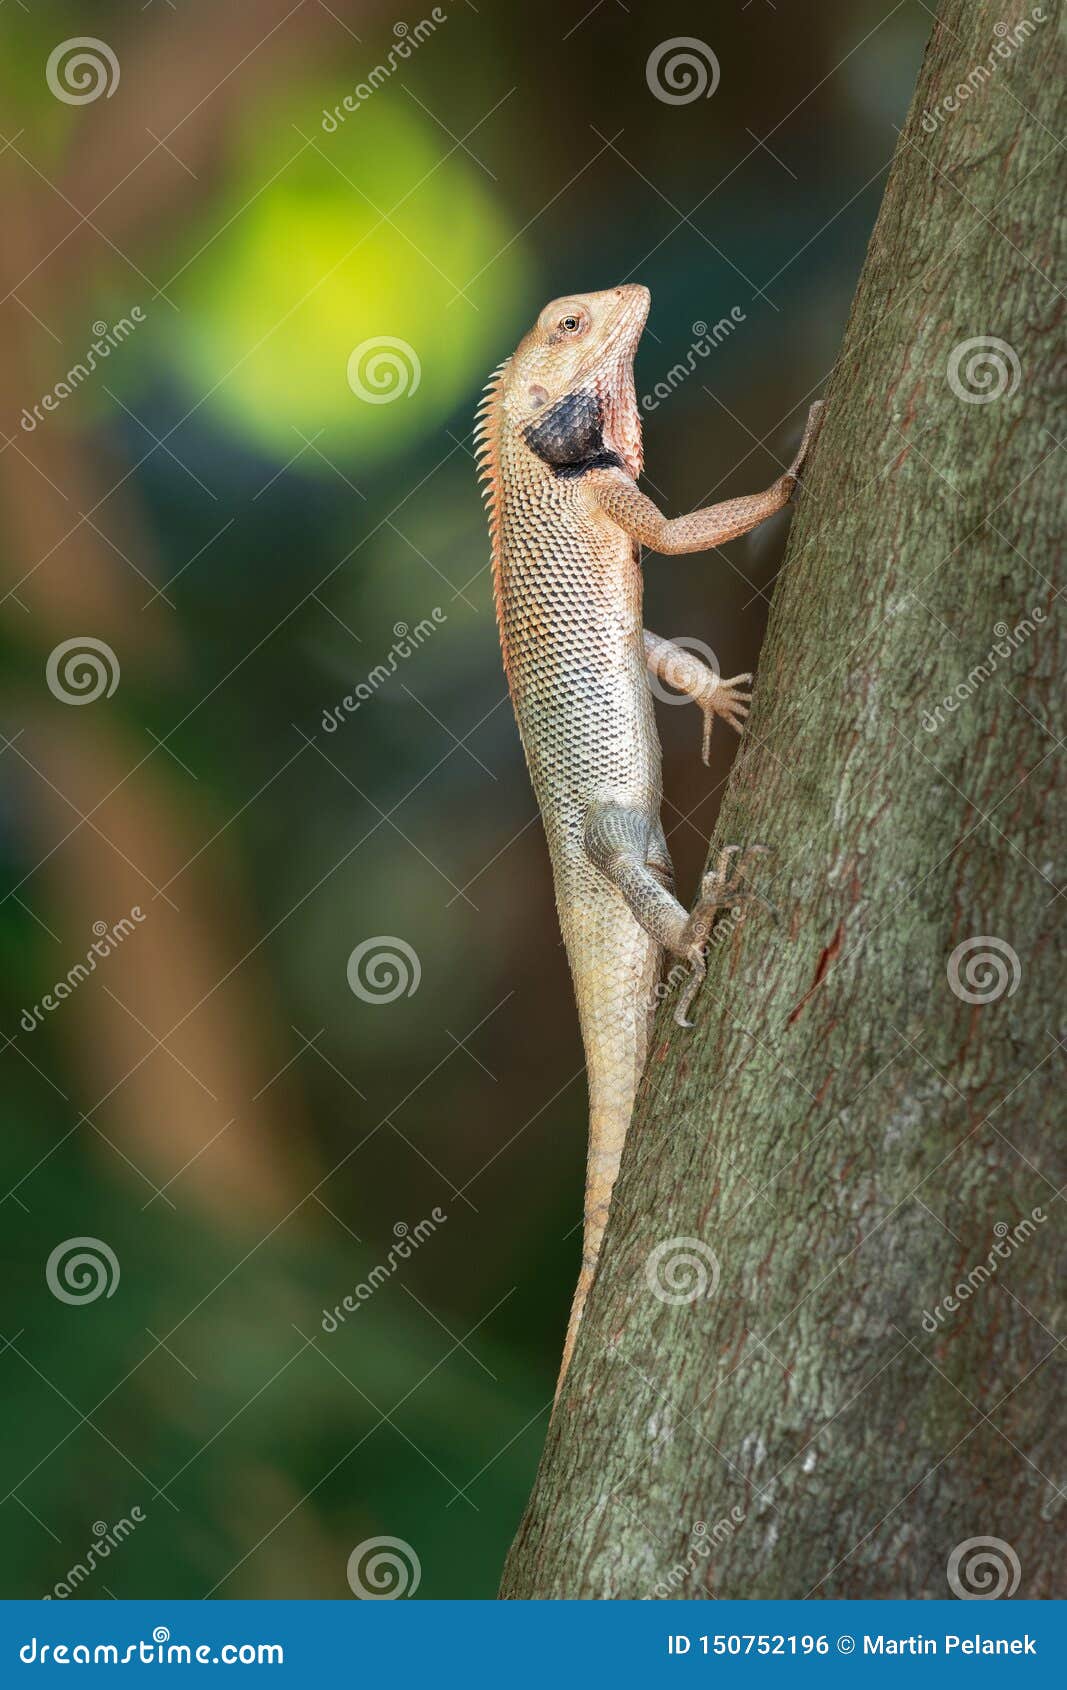 oriental garden lizard - calotes versicolor or eastern